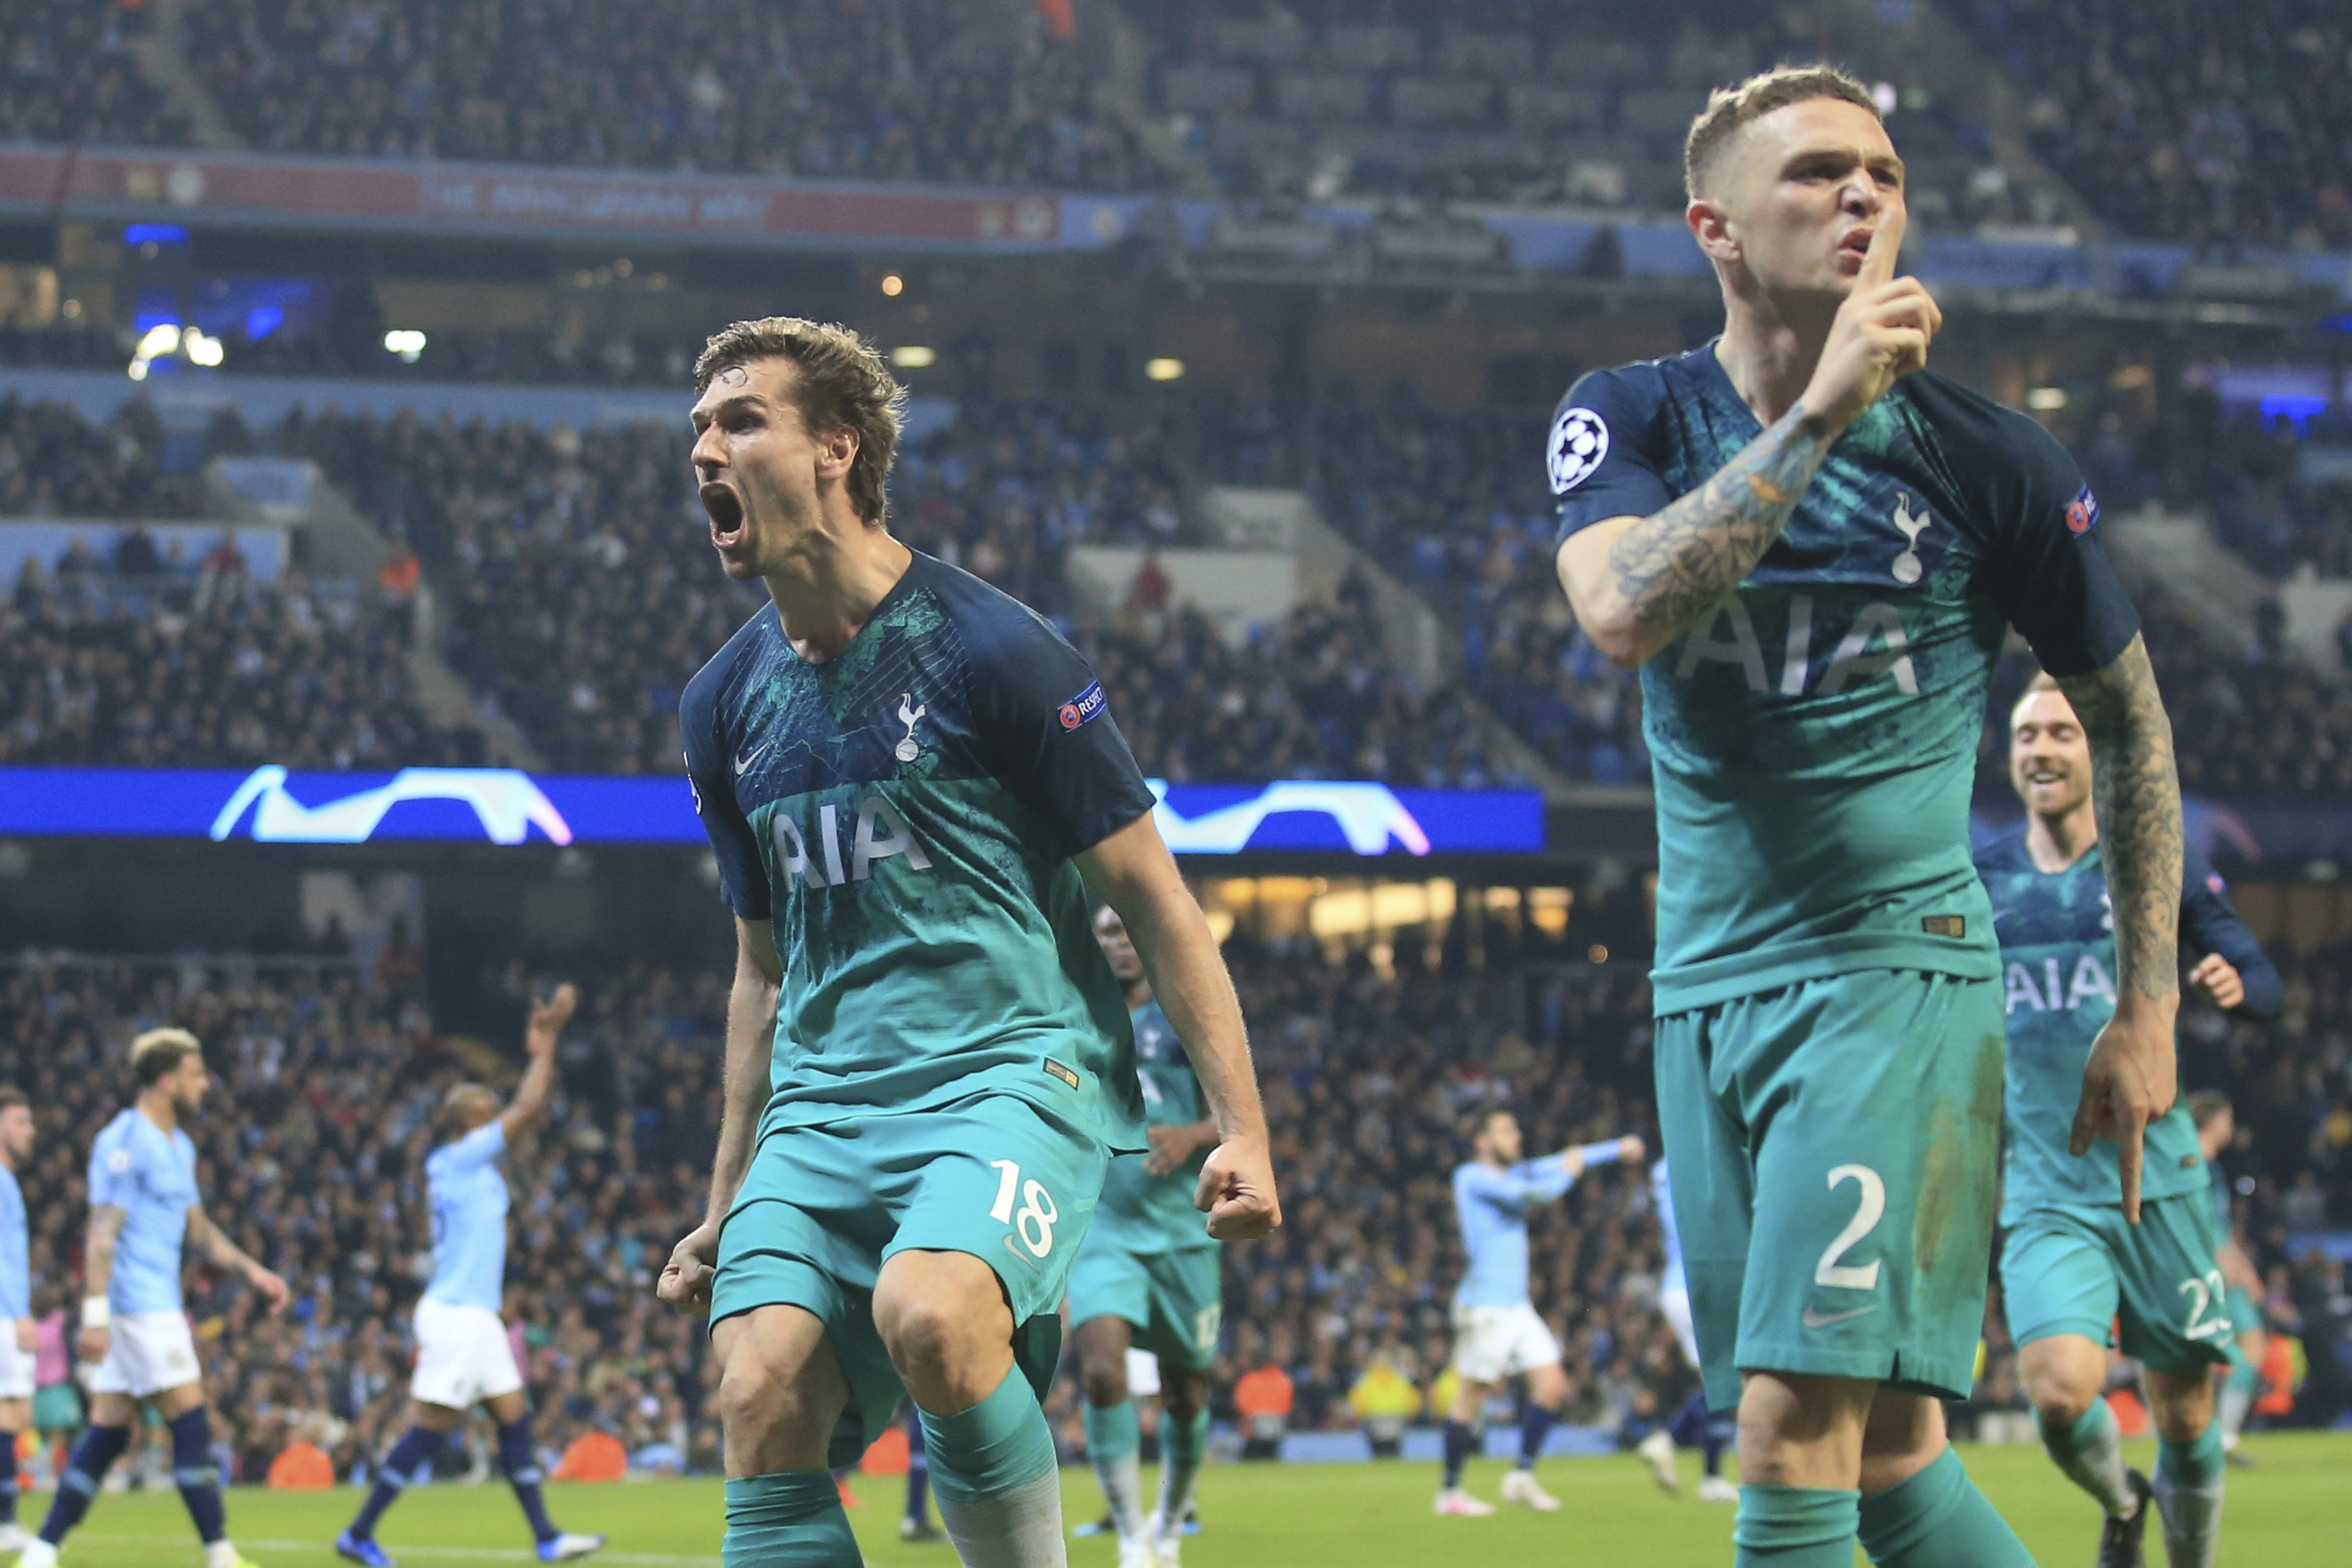 Tottenham a Liverpool postúpili do semifinále Ligy majstrov, v ktorom doplnili Barcelonu a Ajax. Tottenham…